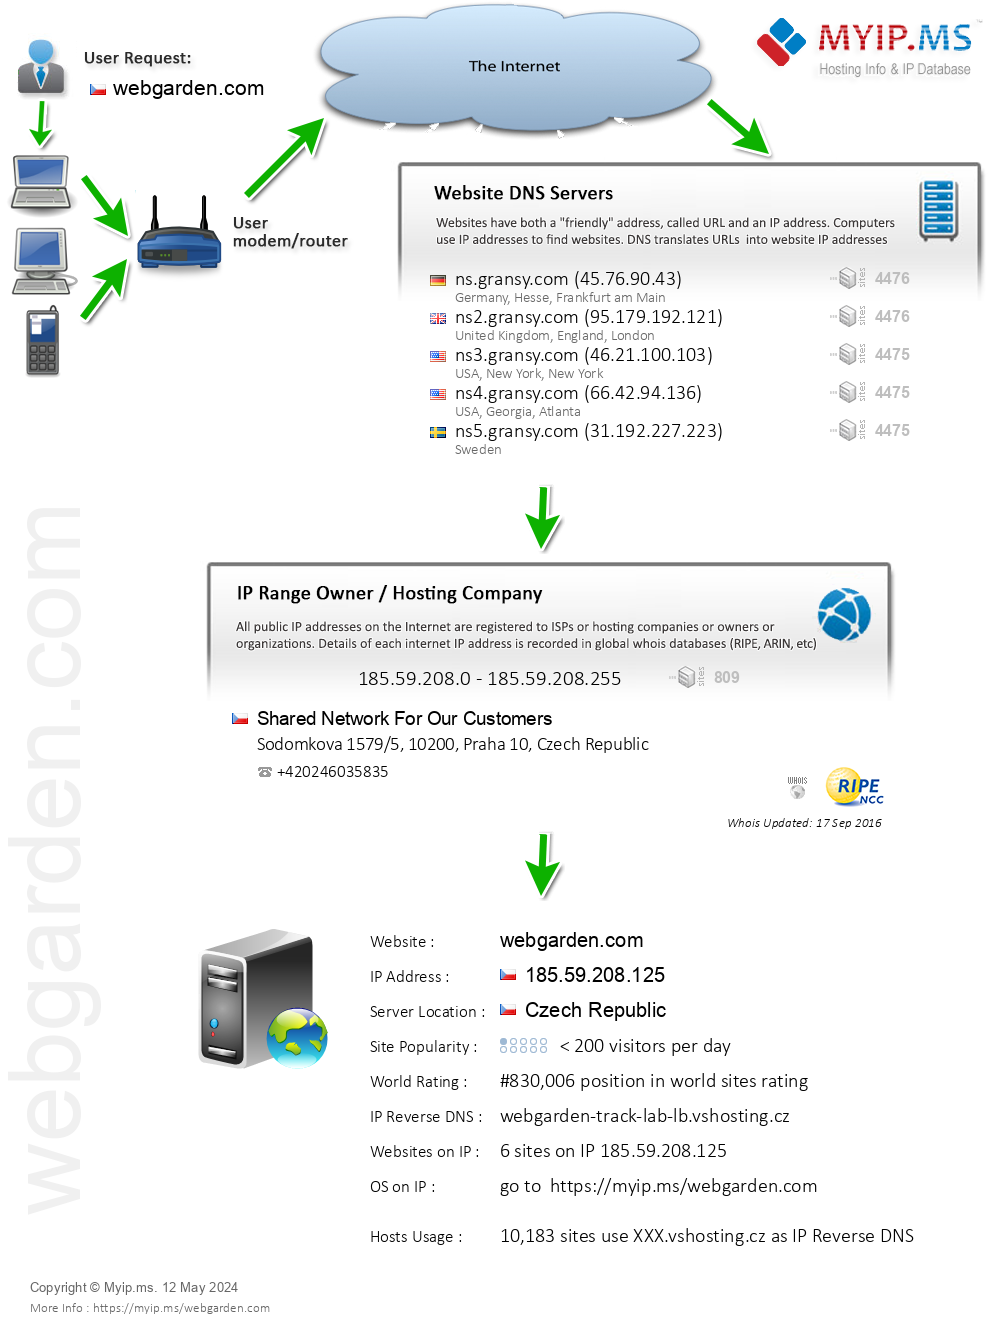 Webgarden.com - Website Hosting Visual IP Diagram